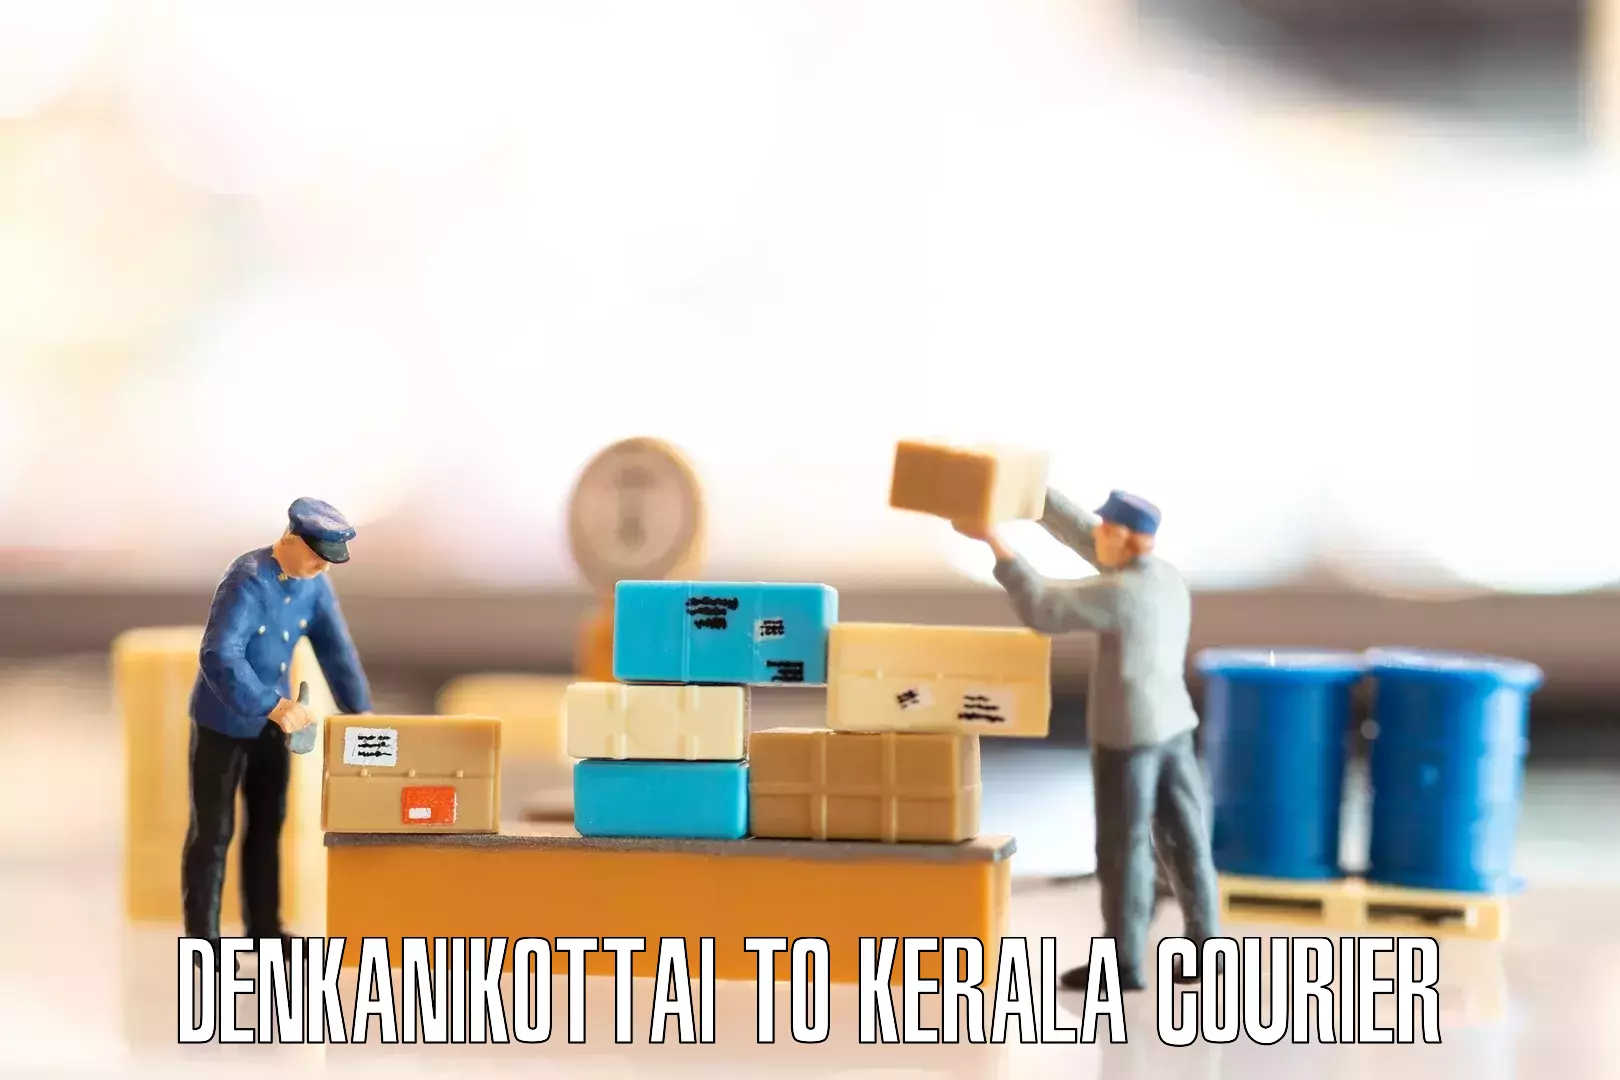 Personalized moving service Denkanikottai to Kerala